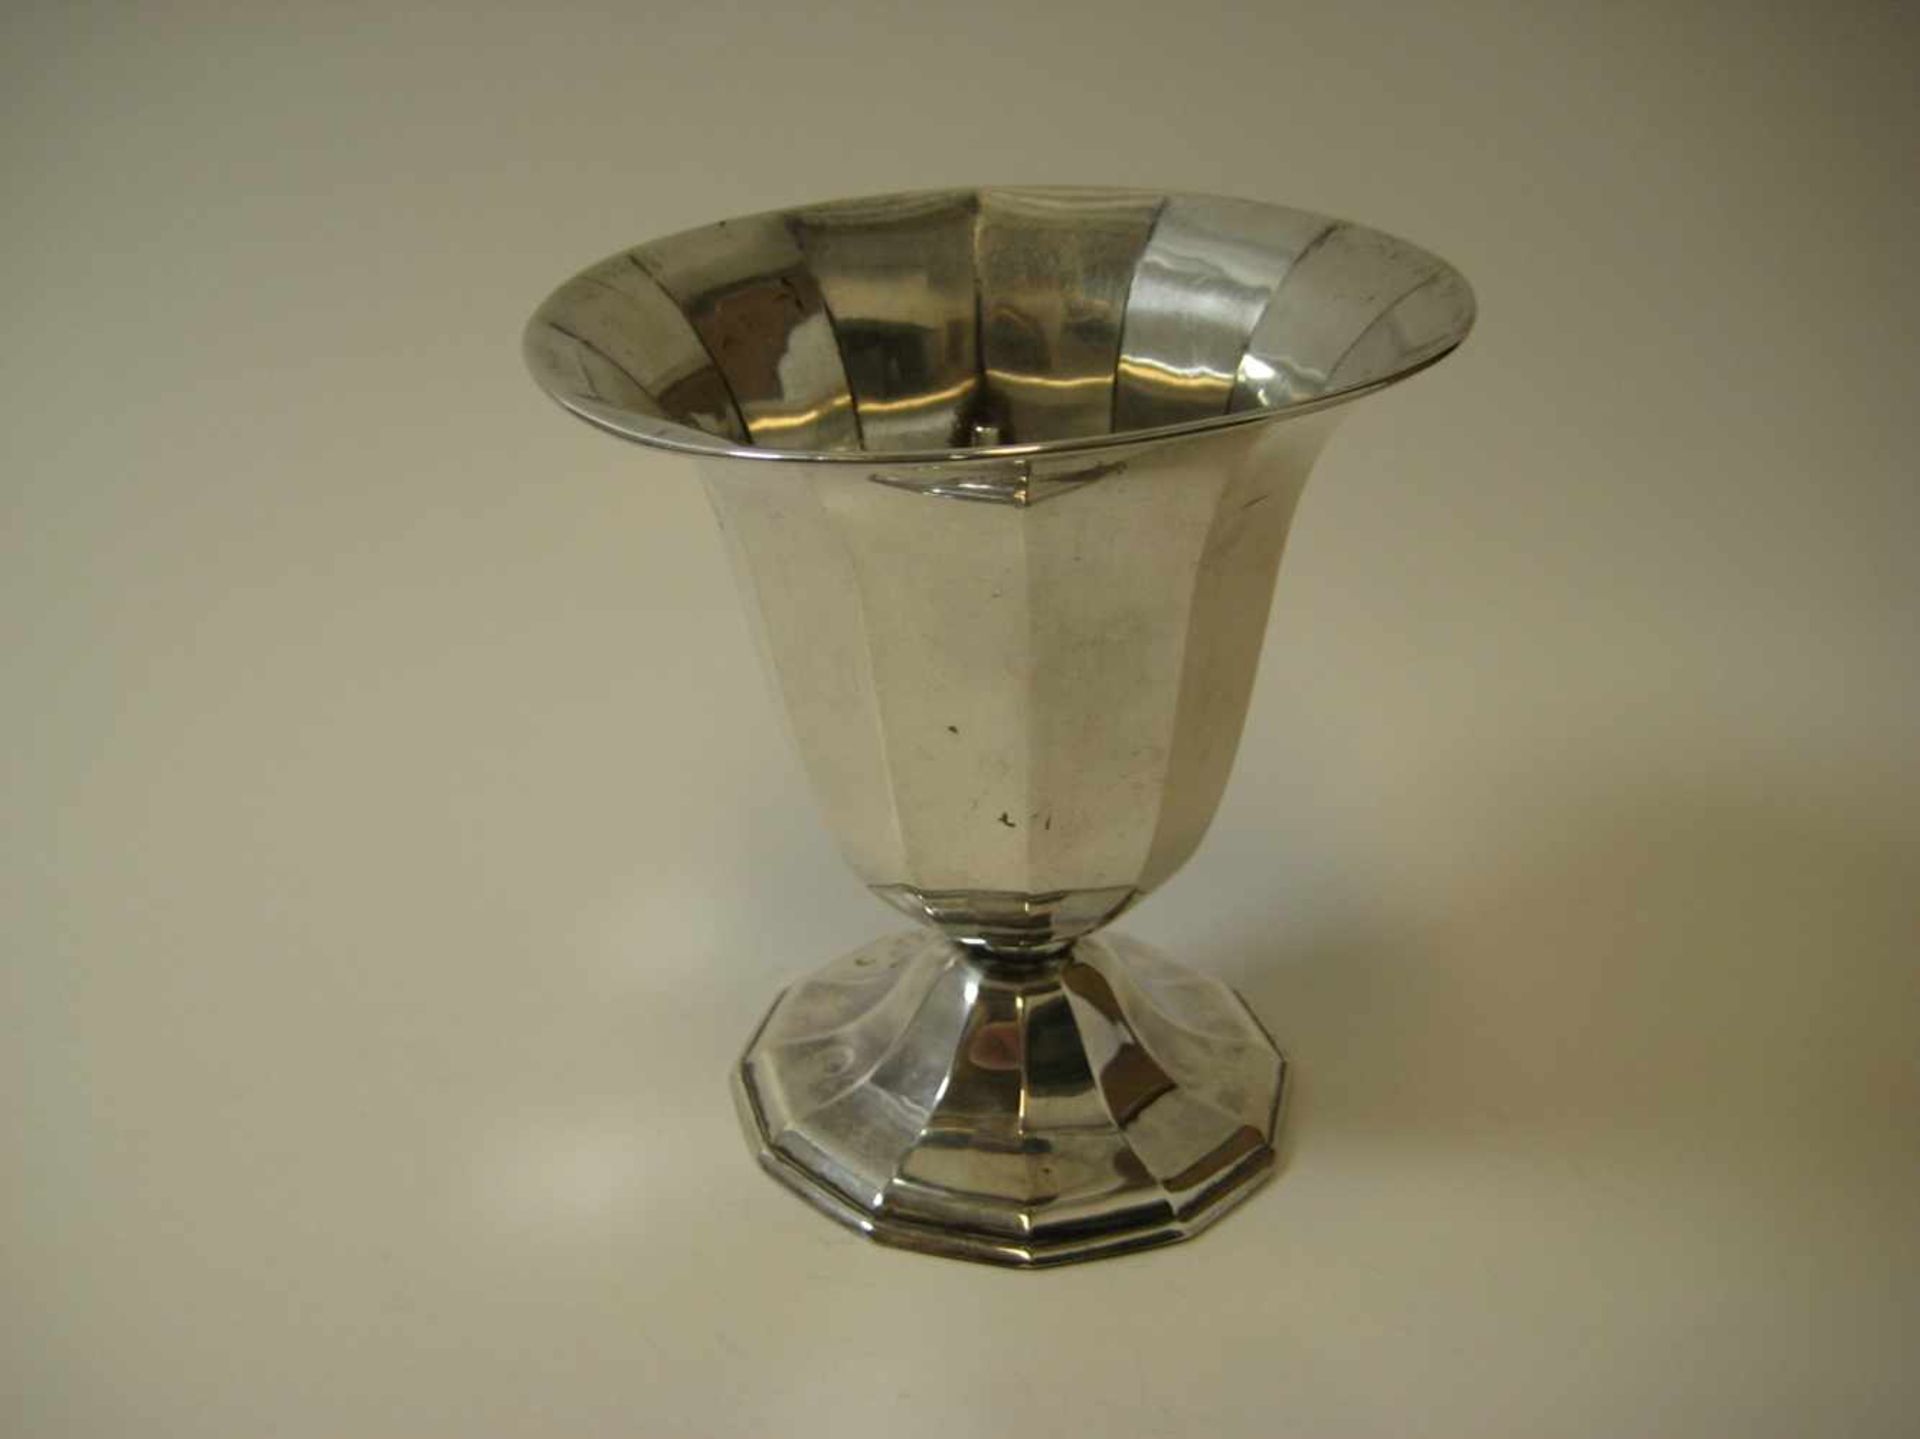 Vase, um 1900, 835er Silber, gepunzt, 126,6 g, h 12 cm, d 11 cm.- - -19.00 % buyer's premium on